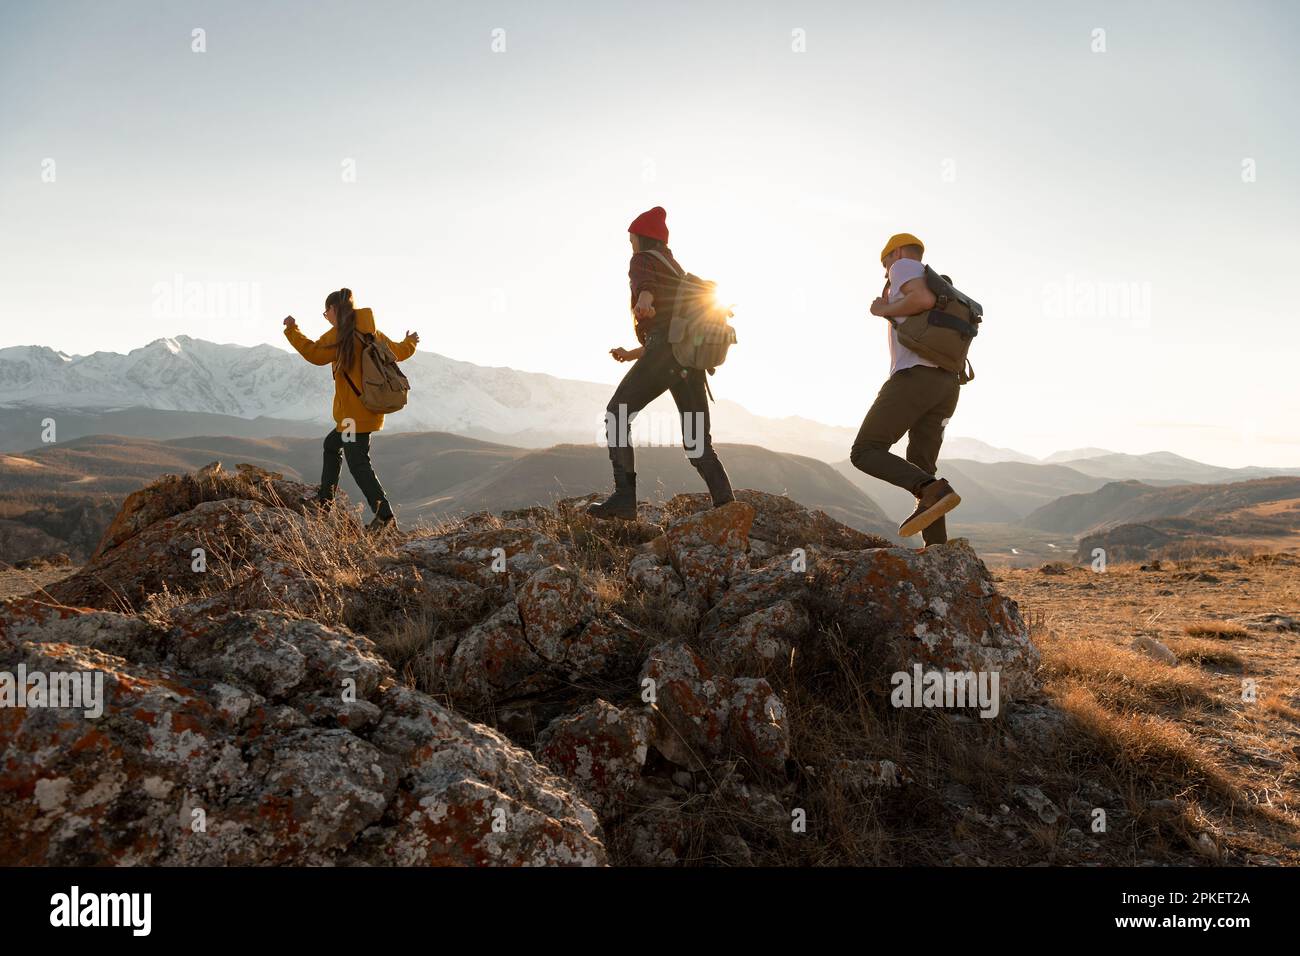 Un groupe de jeunes randonneurs se promène dans les montagnes au coucher du soleil. Silhouettes de touristes à pied avec sacs à dos Banque D'Images